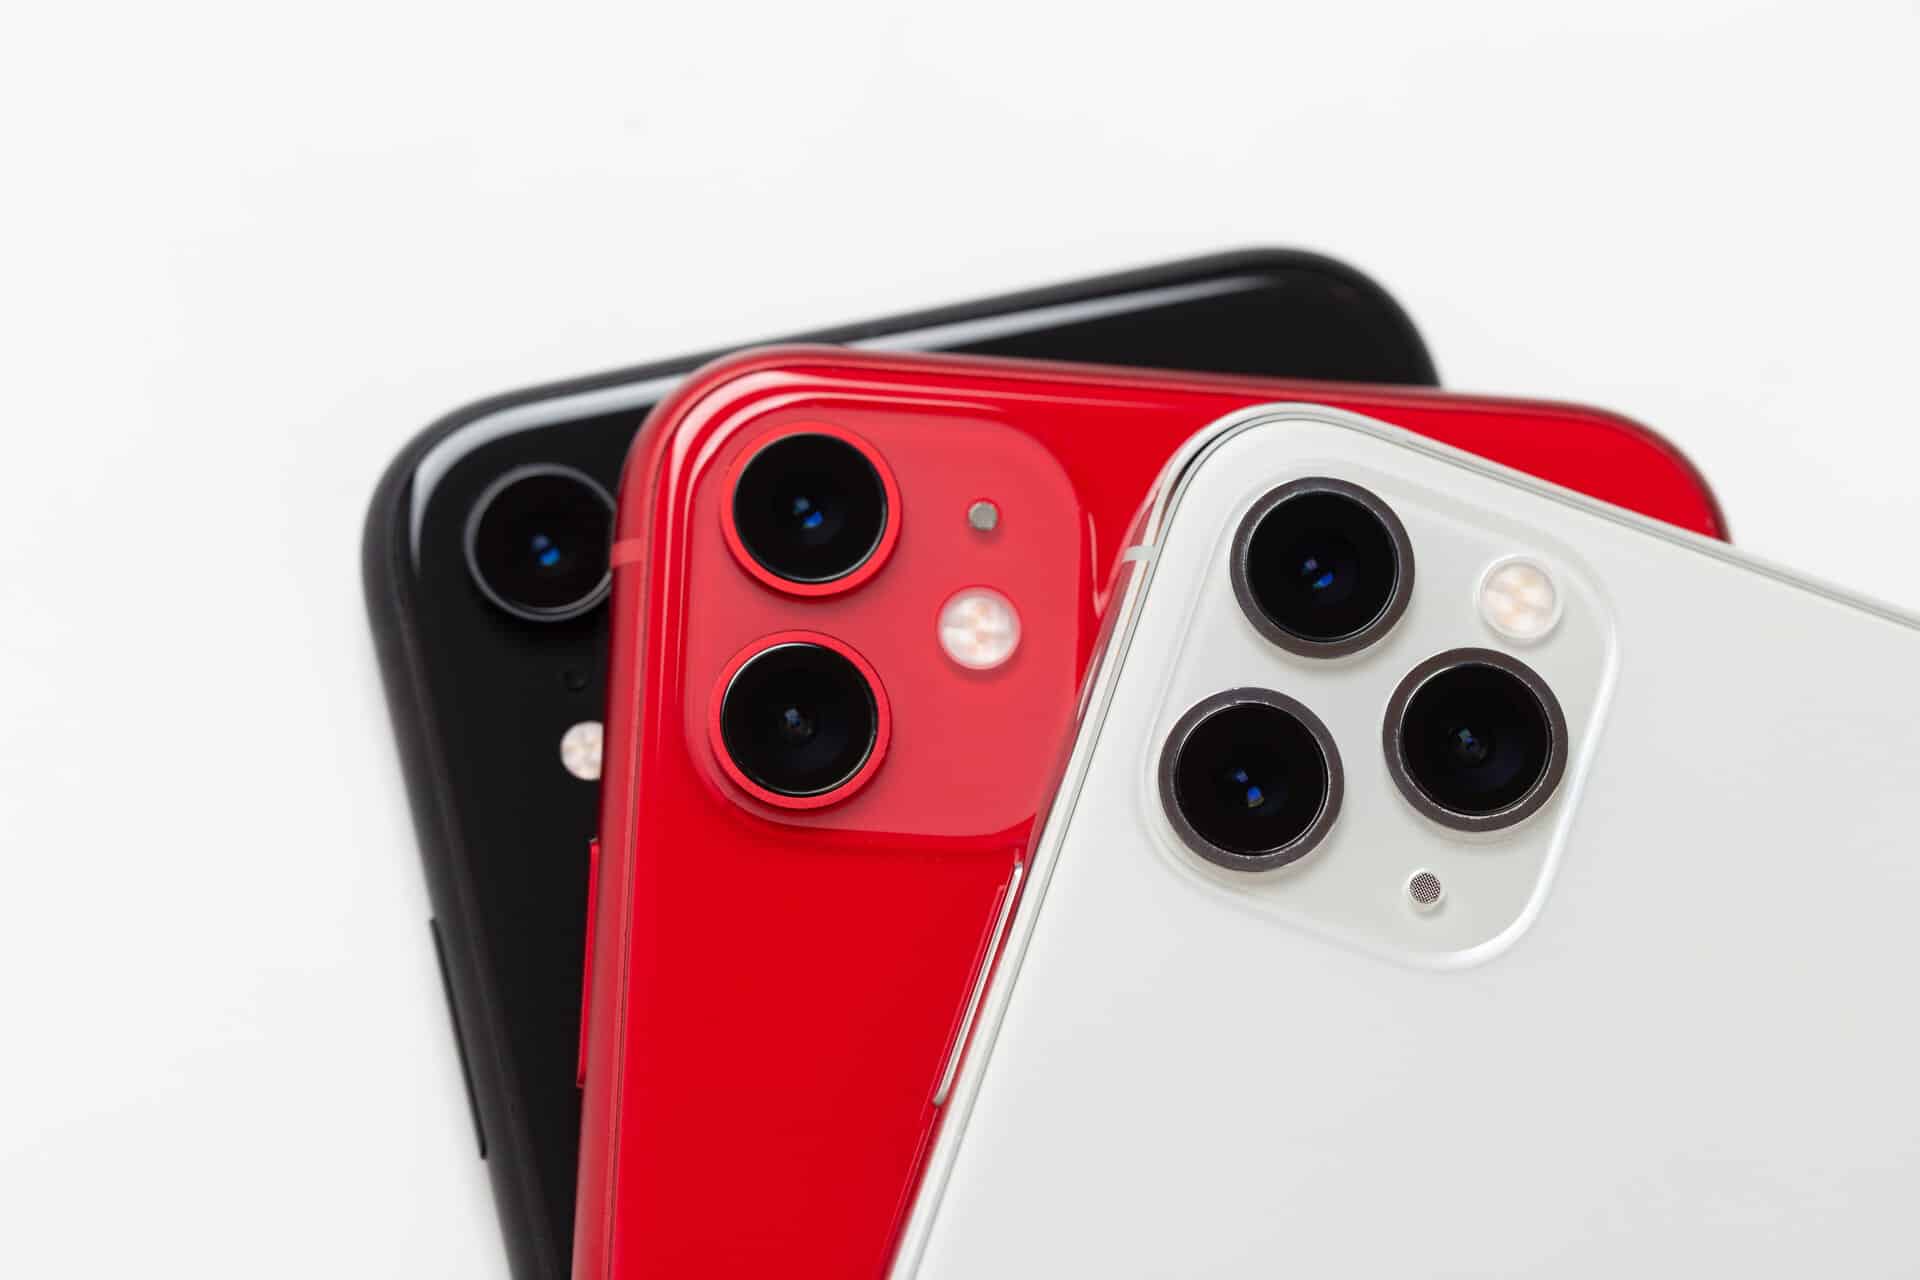 schwarzes, rotes und weißes smartphone wie Karten aufgefächert.